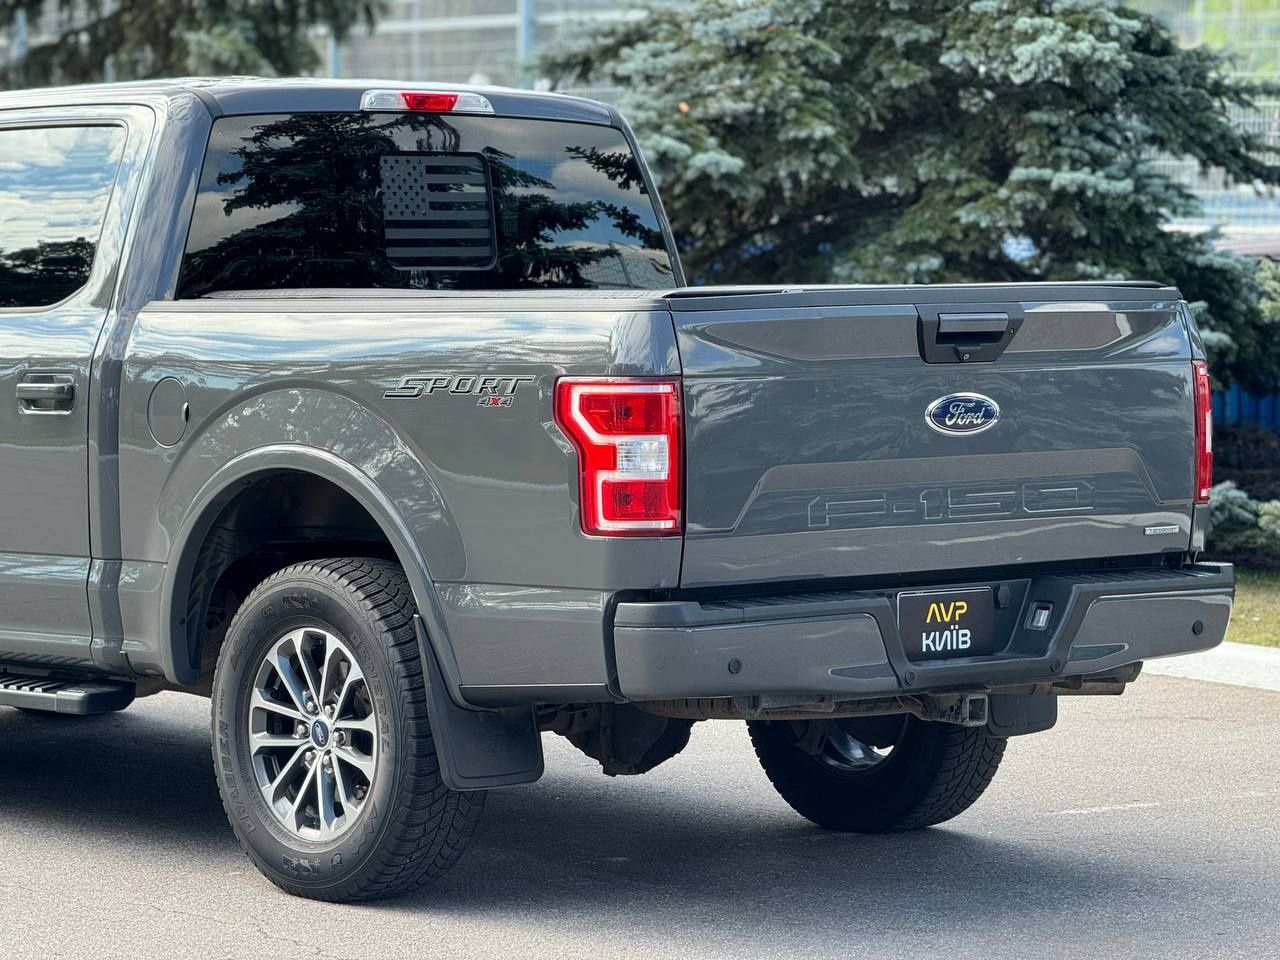 Ford F150 2018 року, 2,7 бензин, автомат, повний привід, 167т.км .